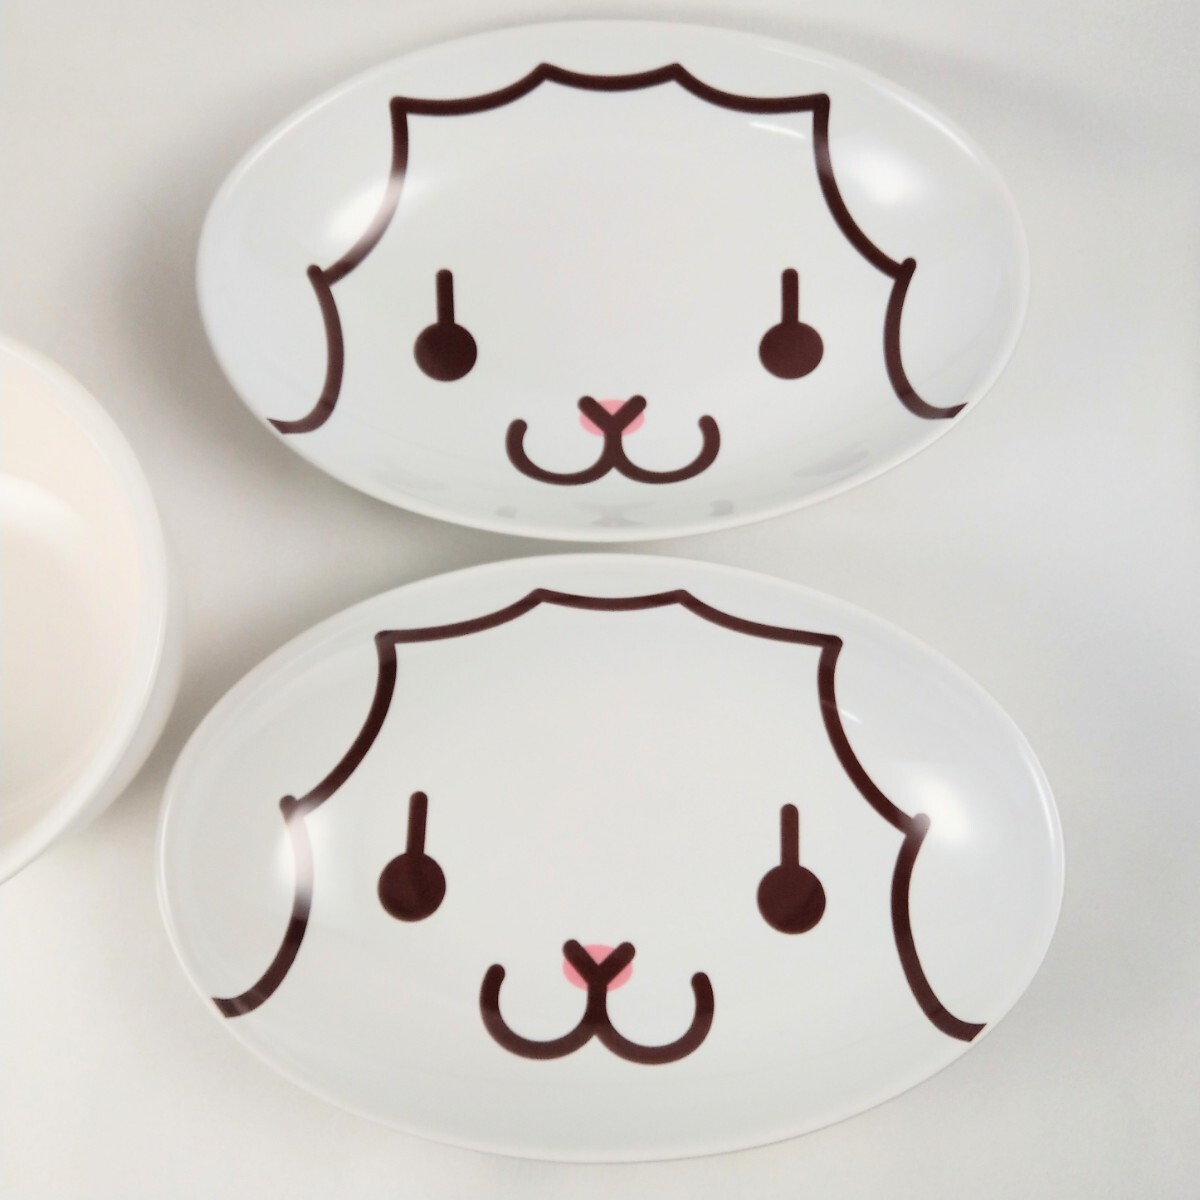 送料込み【非売品】未使用 ミスド ミスタードーナツ misdo 2013年 ウーラーカレー皿×2セット 食器 皿 の画像1